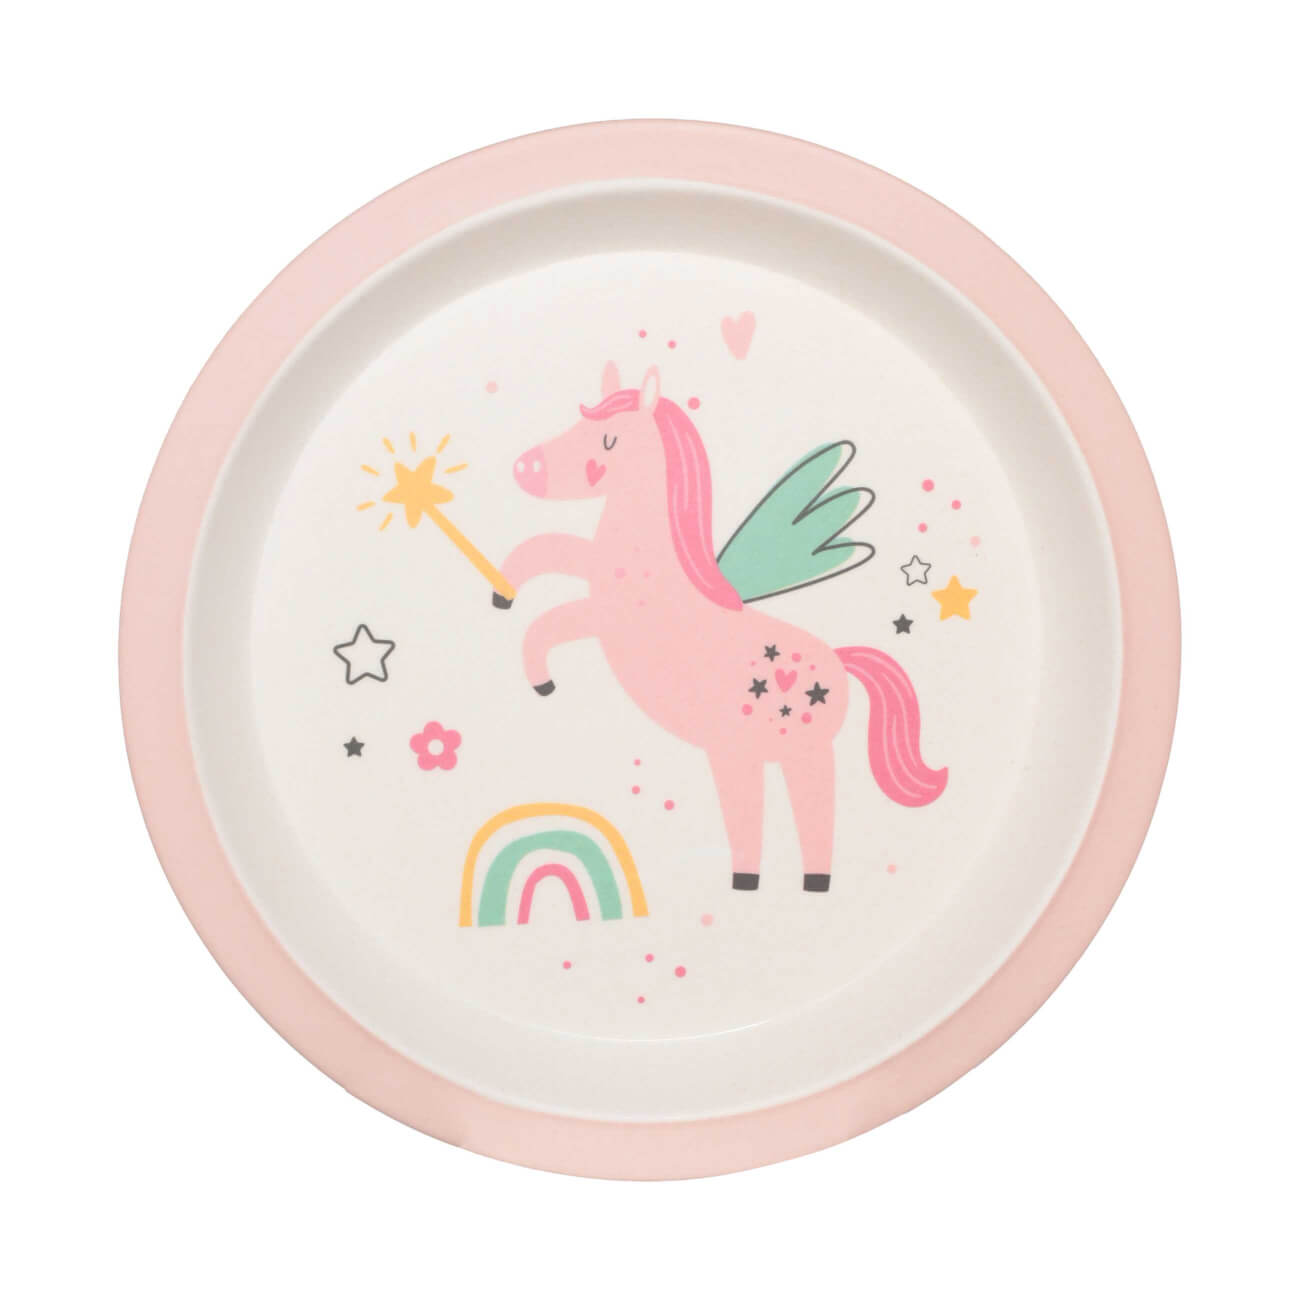 Тарелка закусочная, детская, 21 см, бамбук, розовая, Единорог и радуга, Unicorn тарелка суповая детская 15х4 см бамбук розовая единорог unicorn